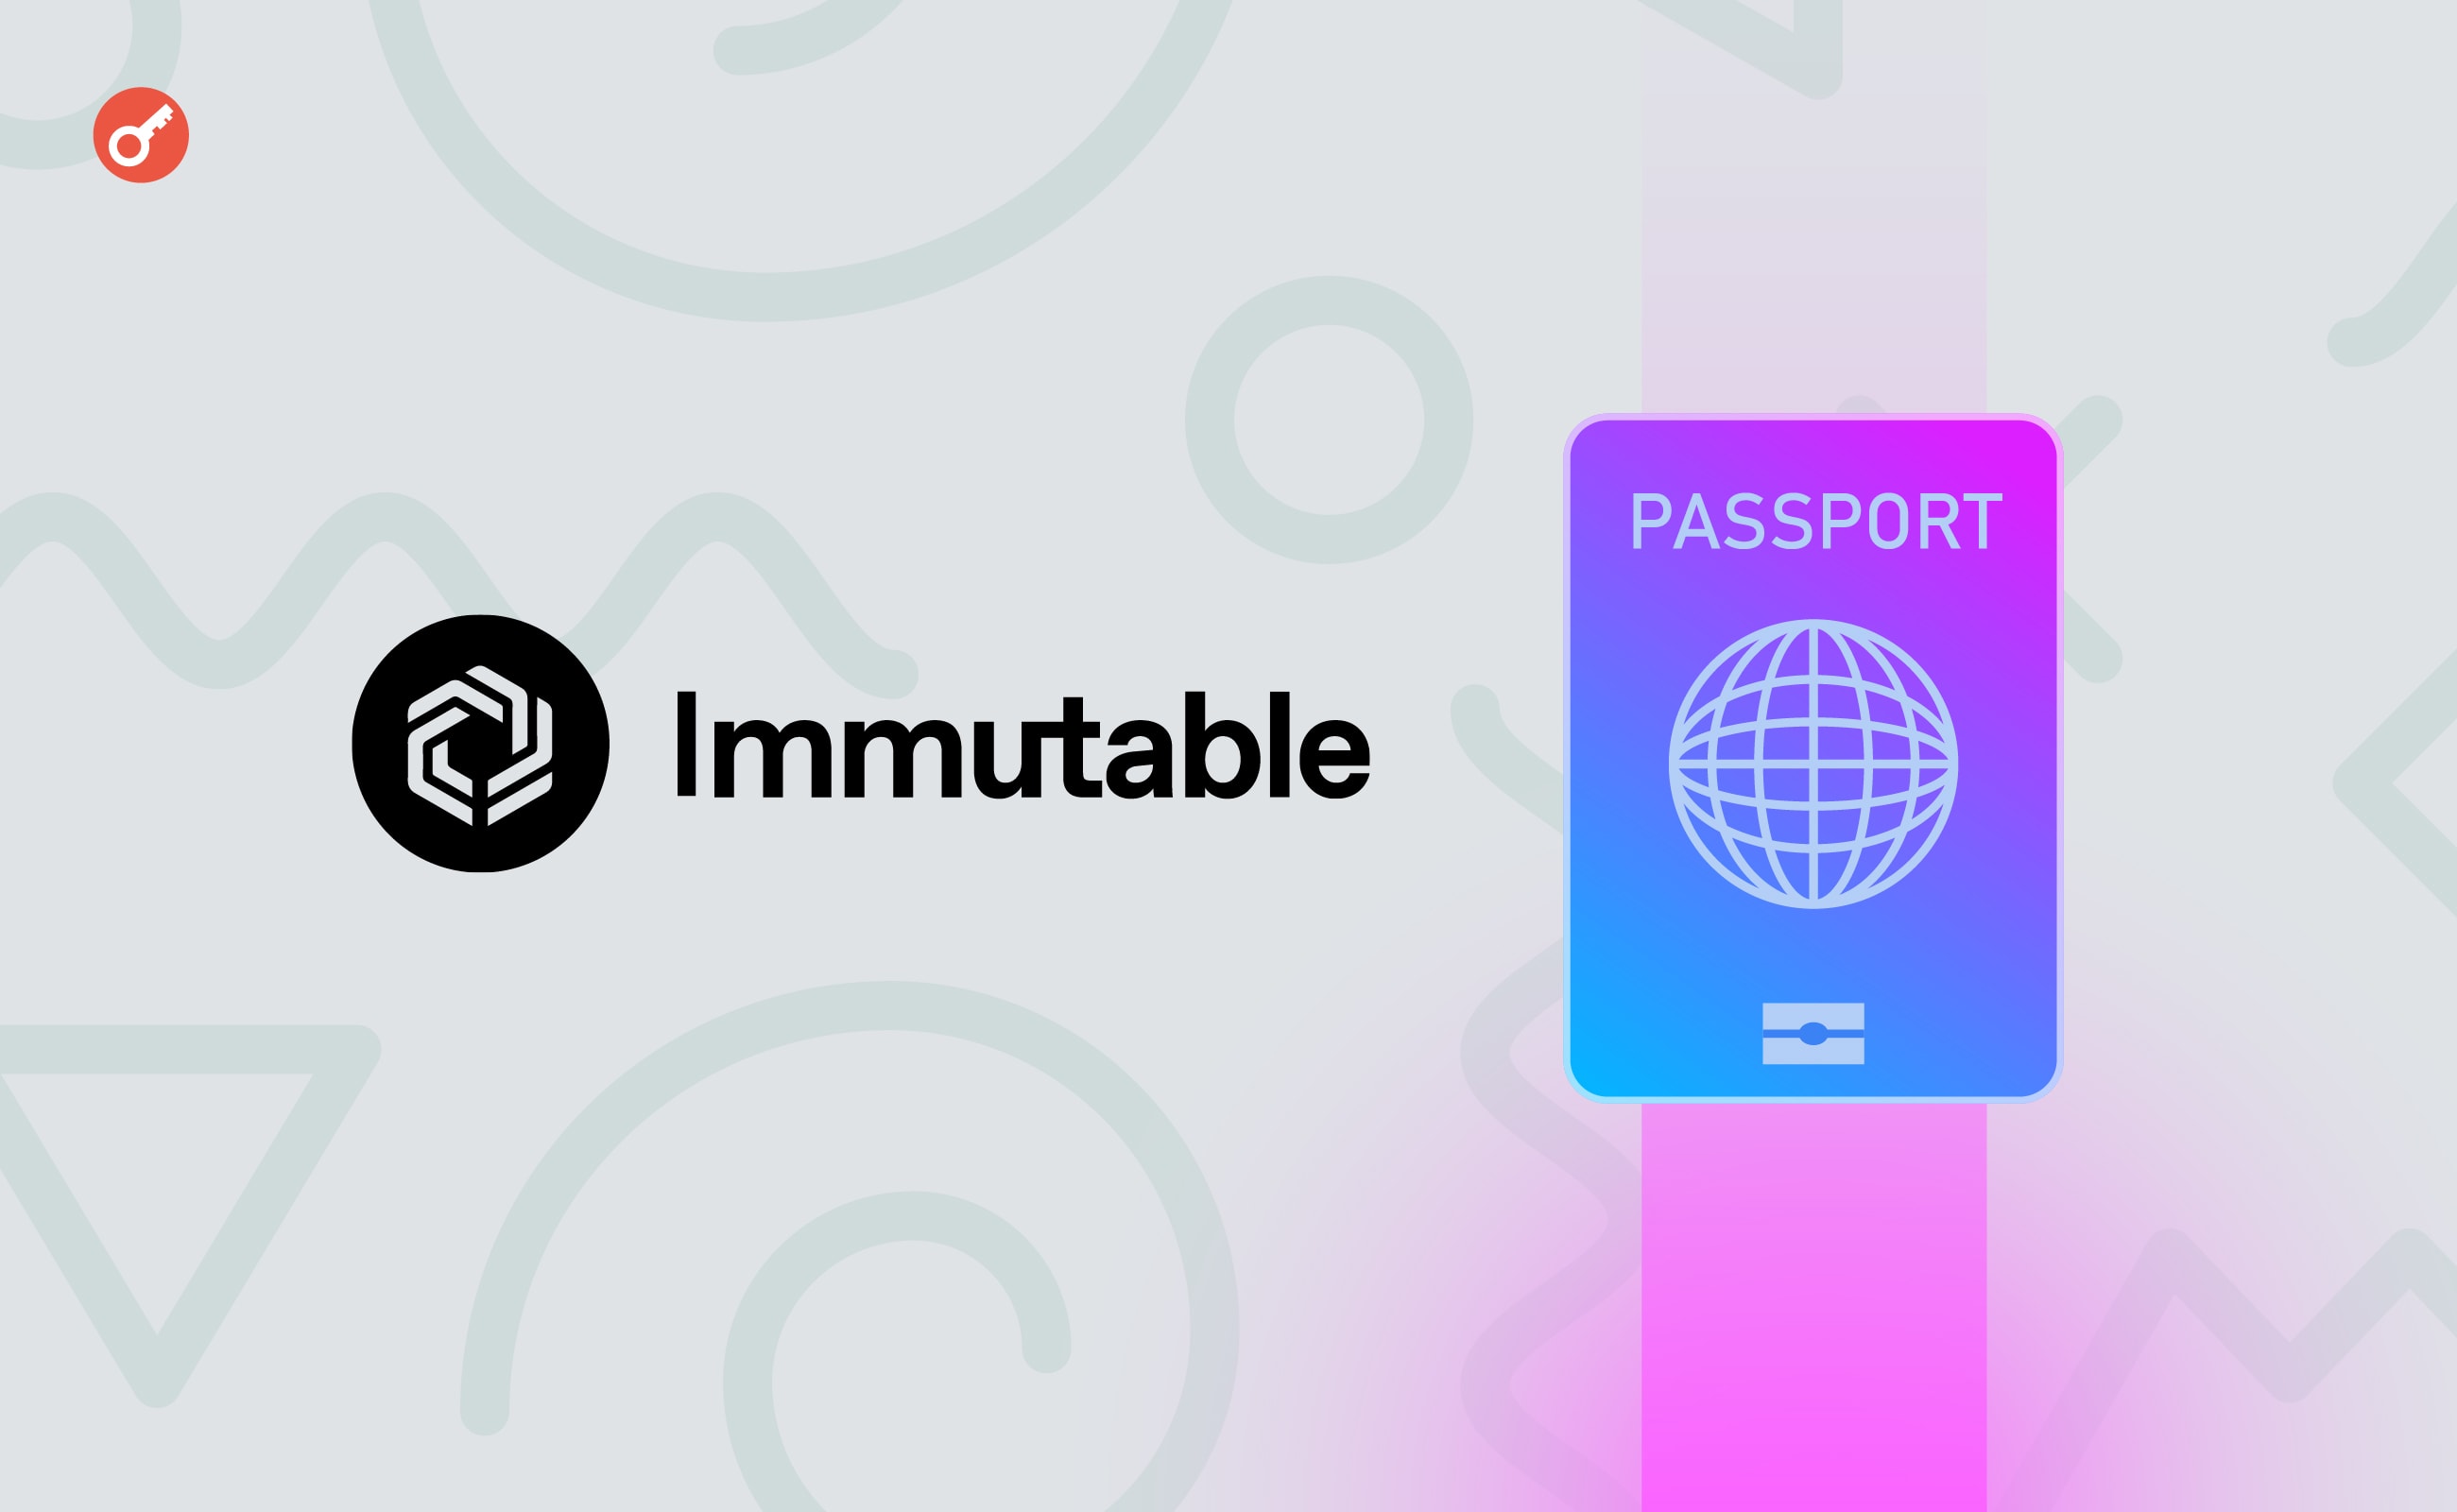 Immutable официально представила Passport для игроков. Заглавный коллаж новости.